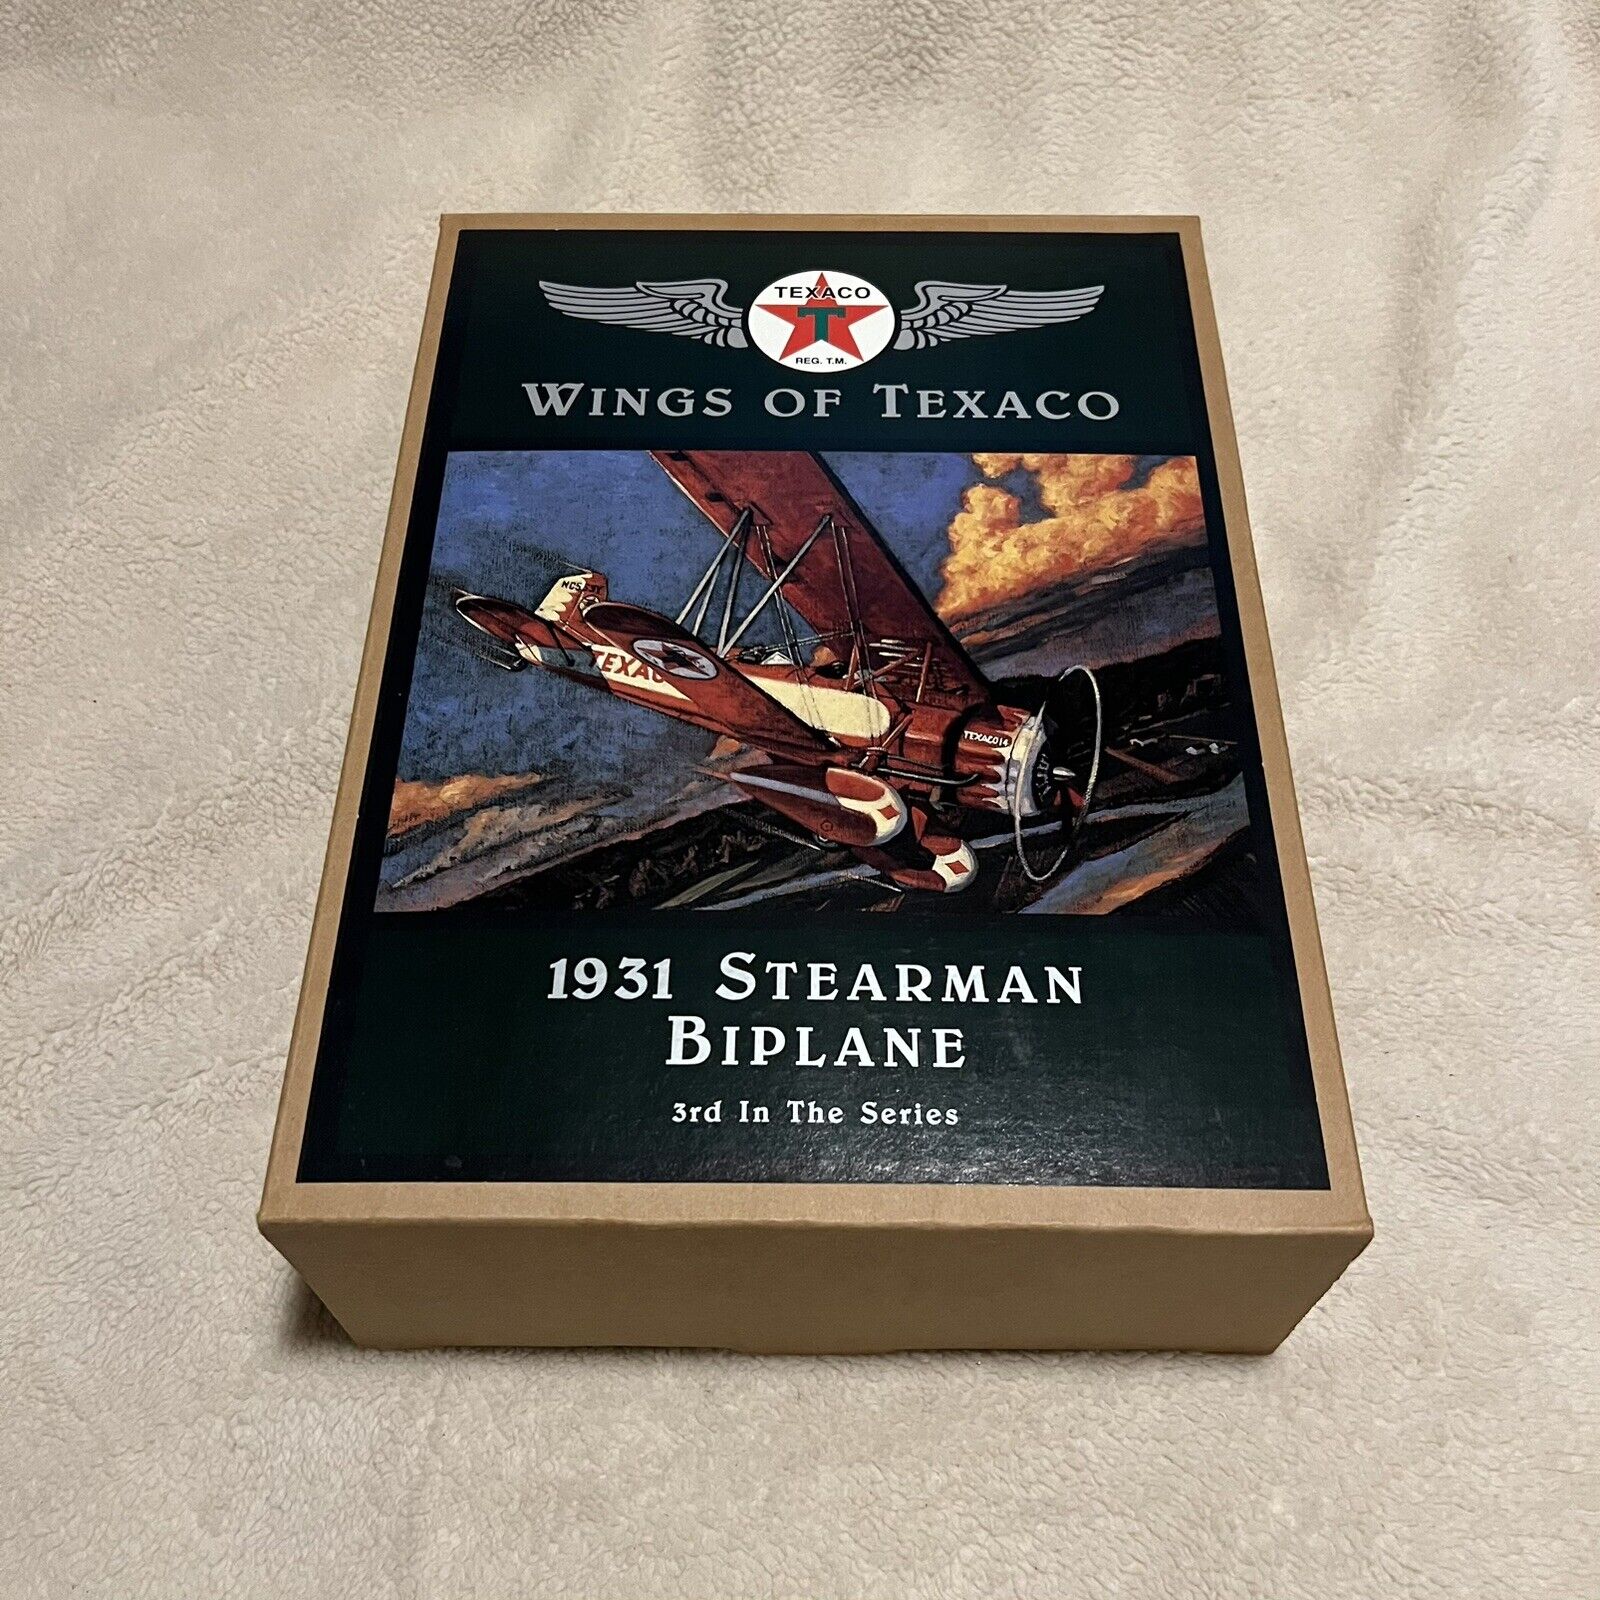 Wings of Texaco 1931 Stearman Biplane Die-Cast Metal Coin Bank #3 in Series